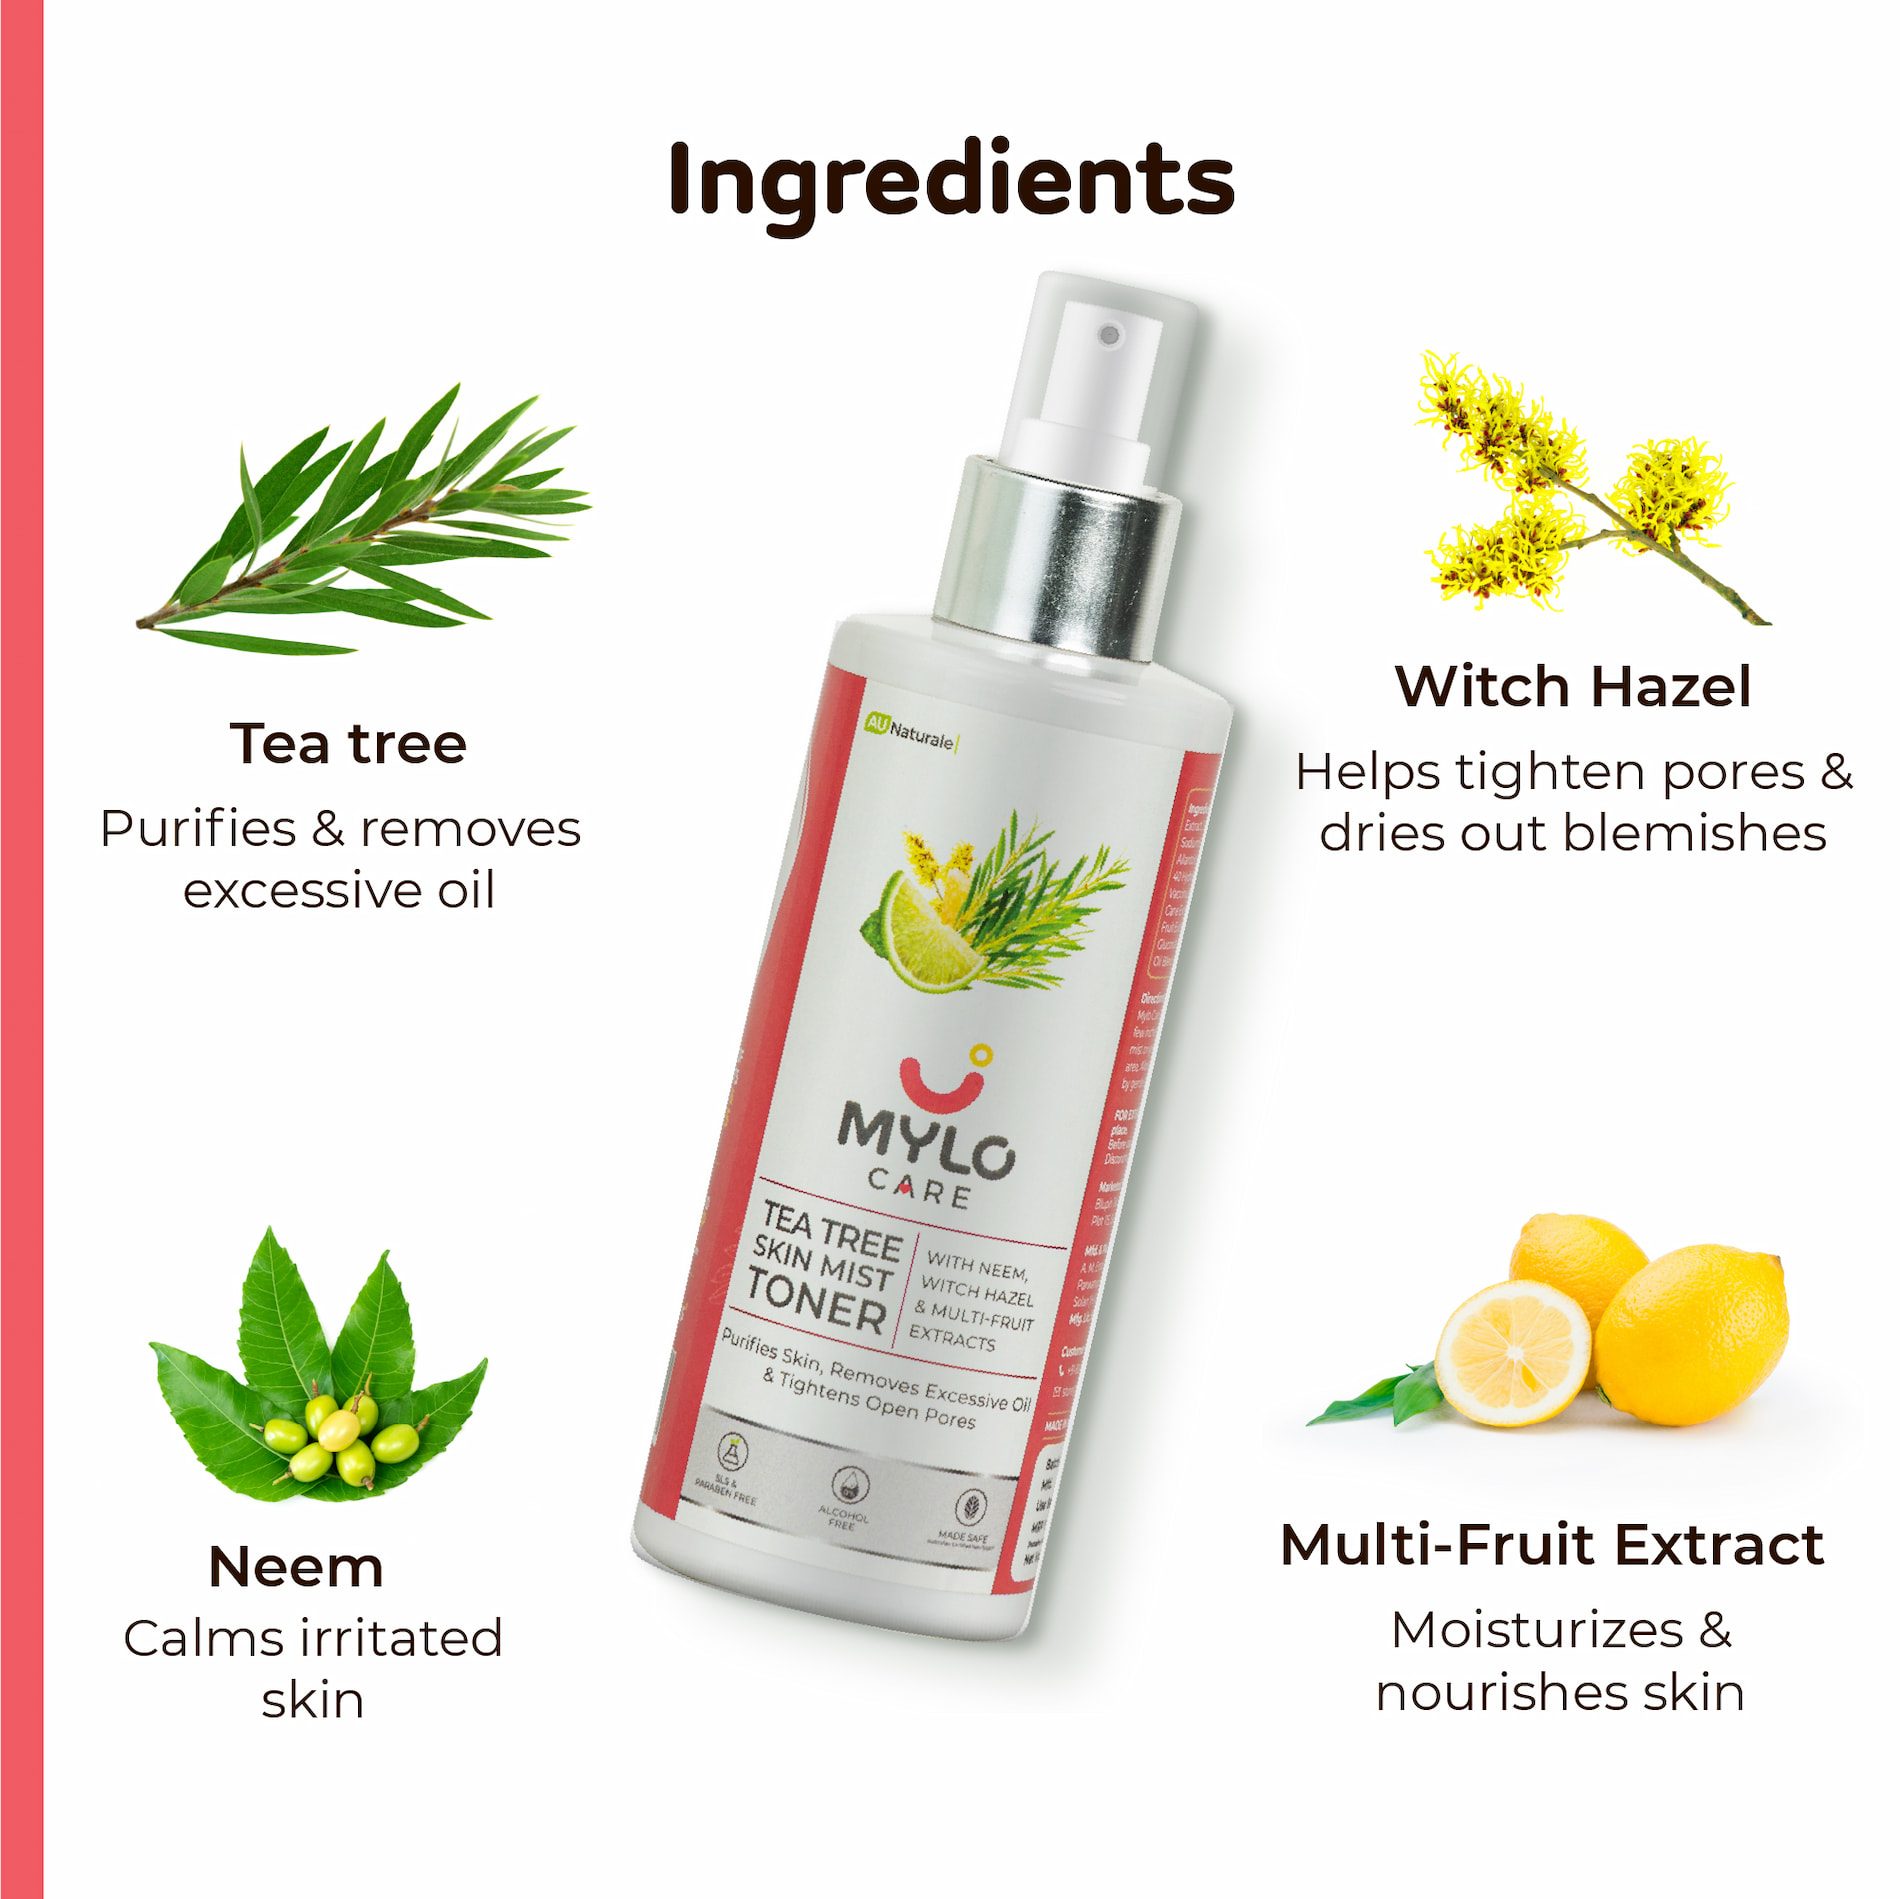 Mylo Tea Tree Skin Mist Toner 100ml - Buy 1 Get 1 FREE